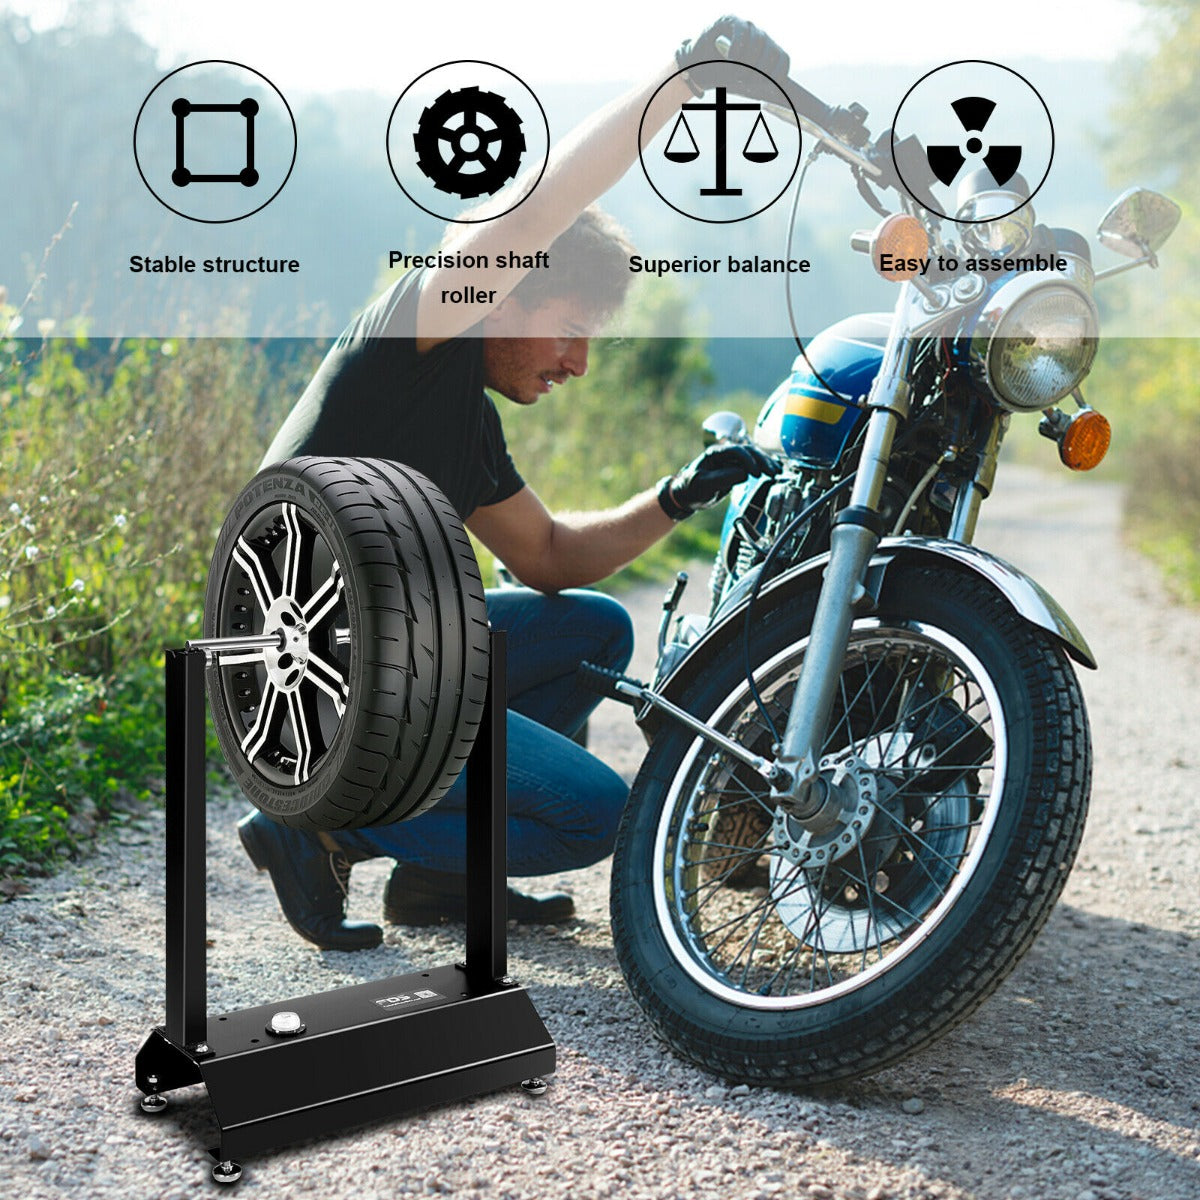 Motorcycle Wheel Balancer with Adjustable Centering Cones